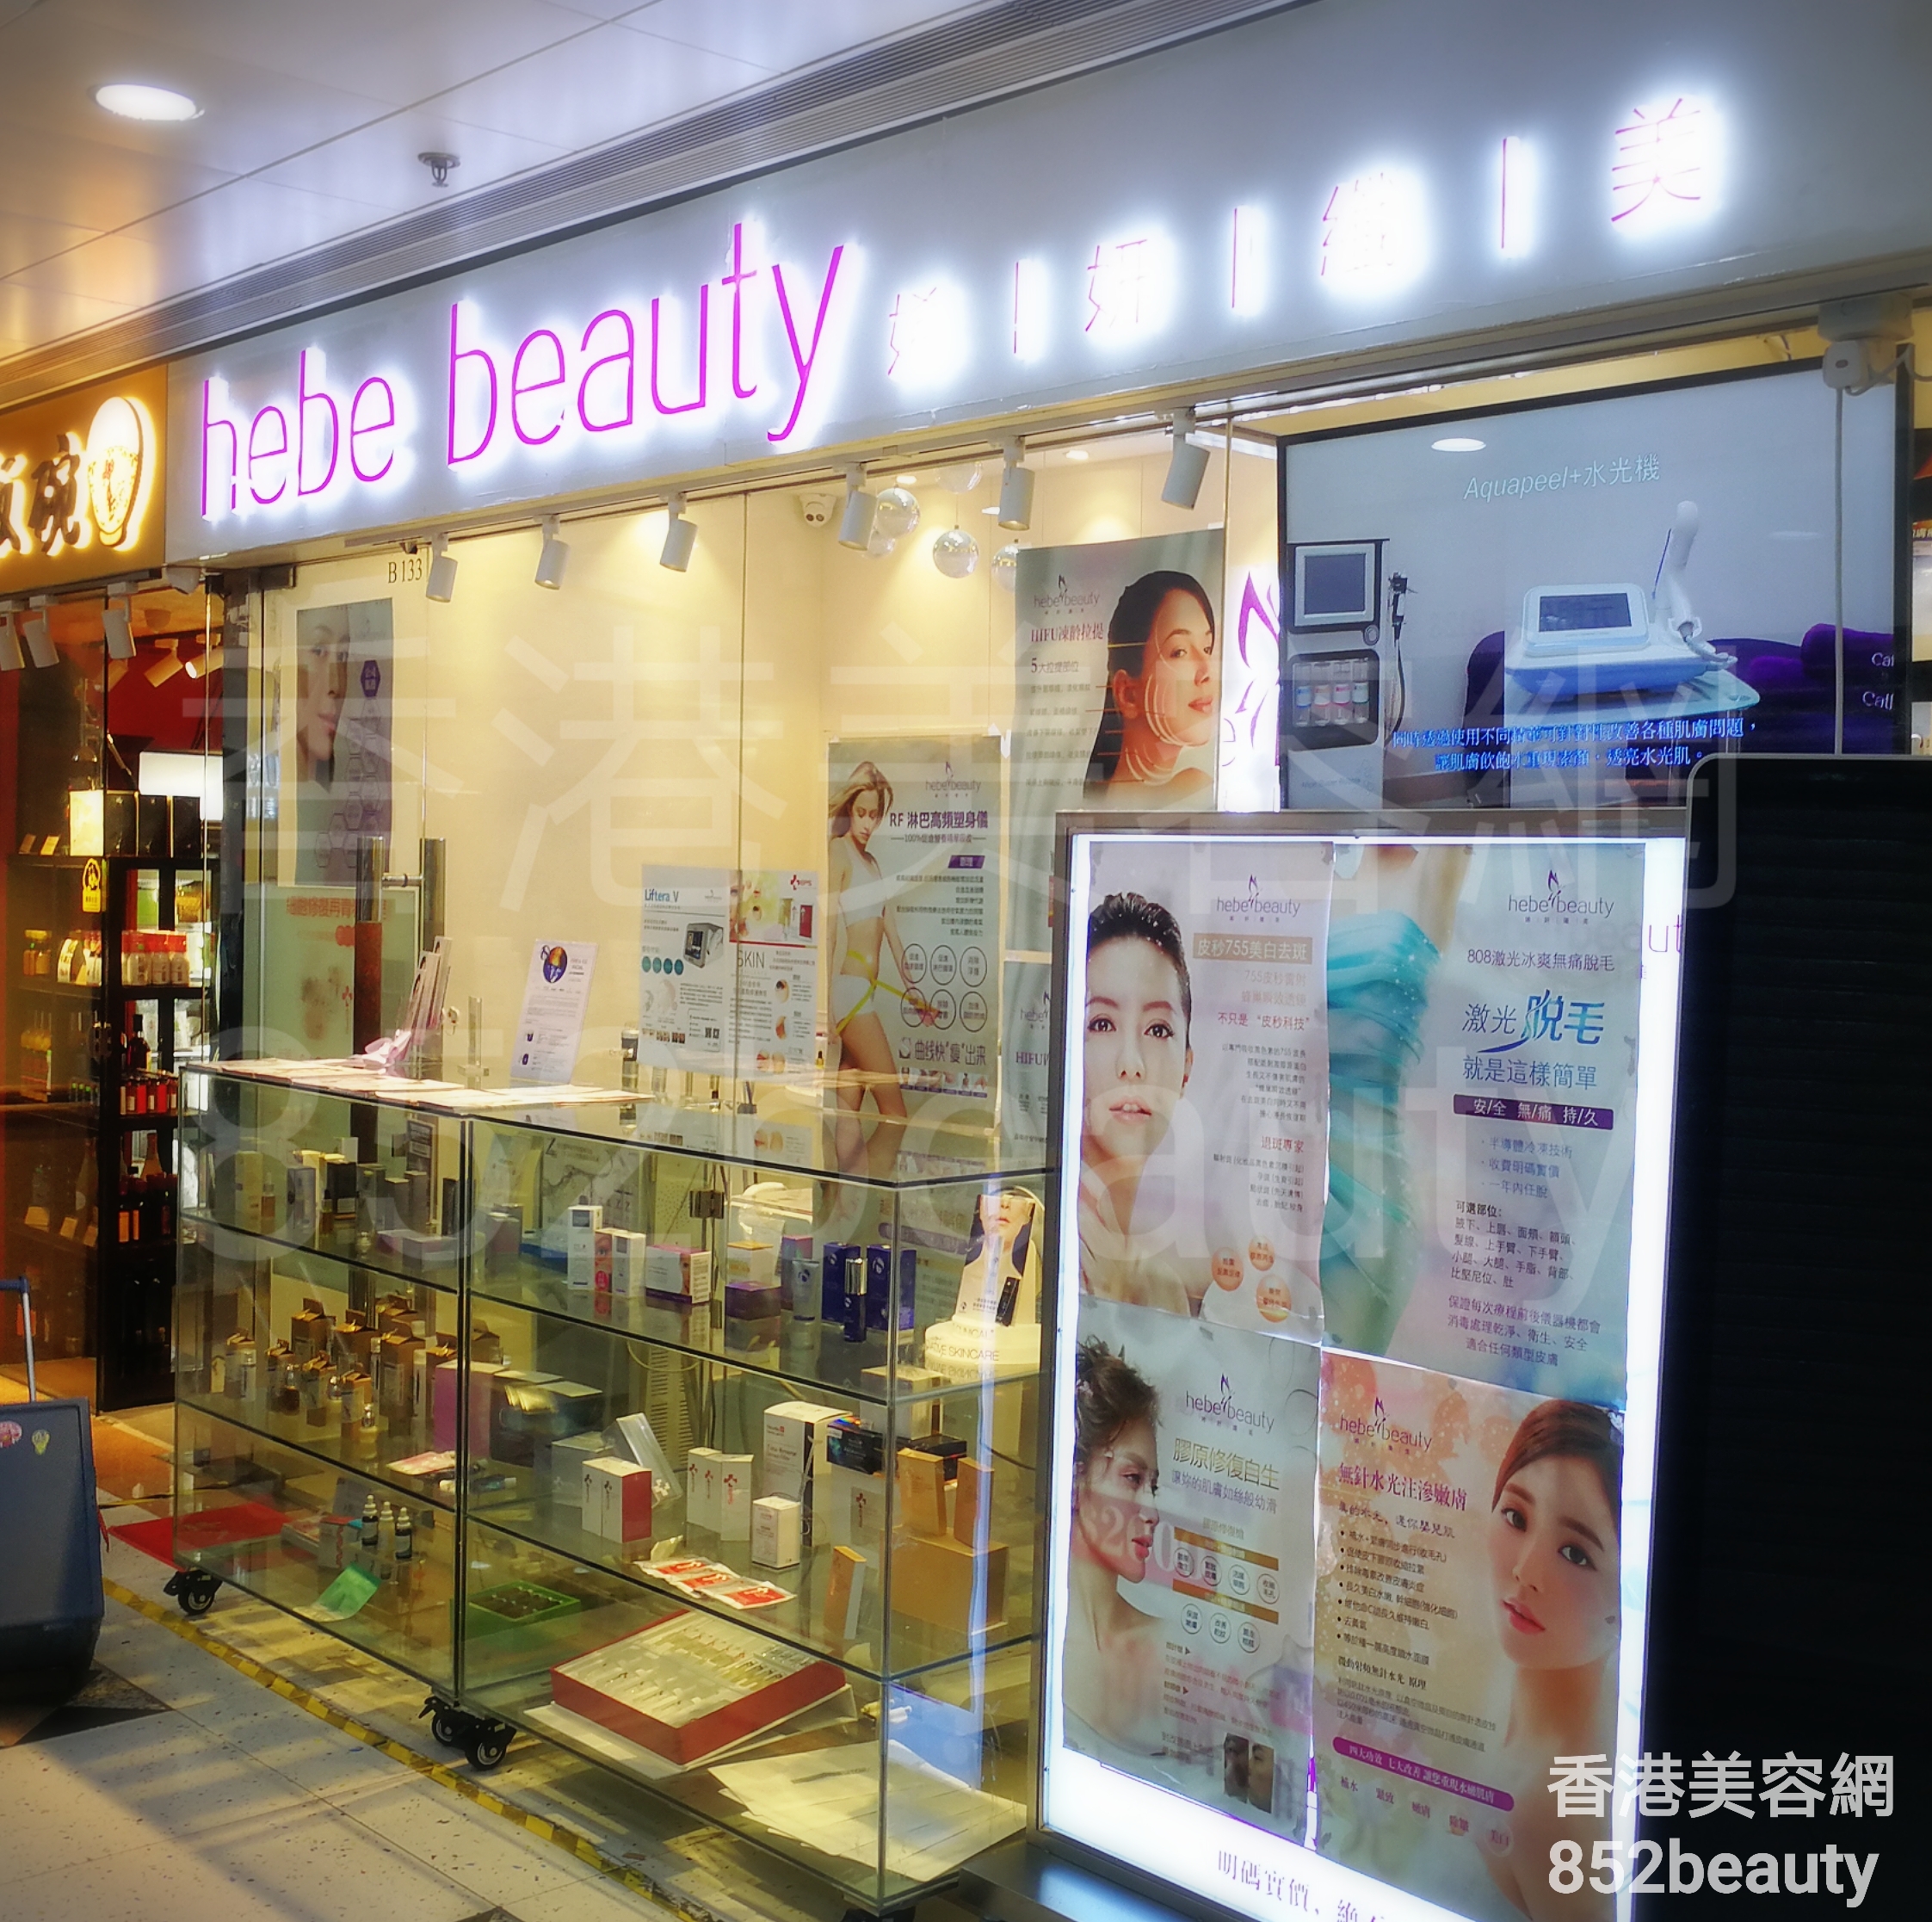 香港美容網 Hong Kong Beauty Salon 美容院 / 美容師: hebe beauty 㛓妍纖美